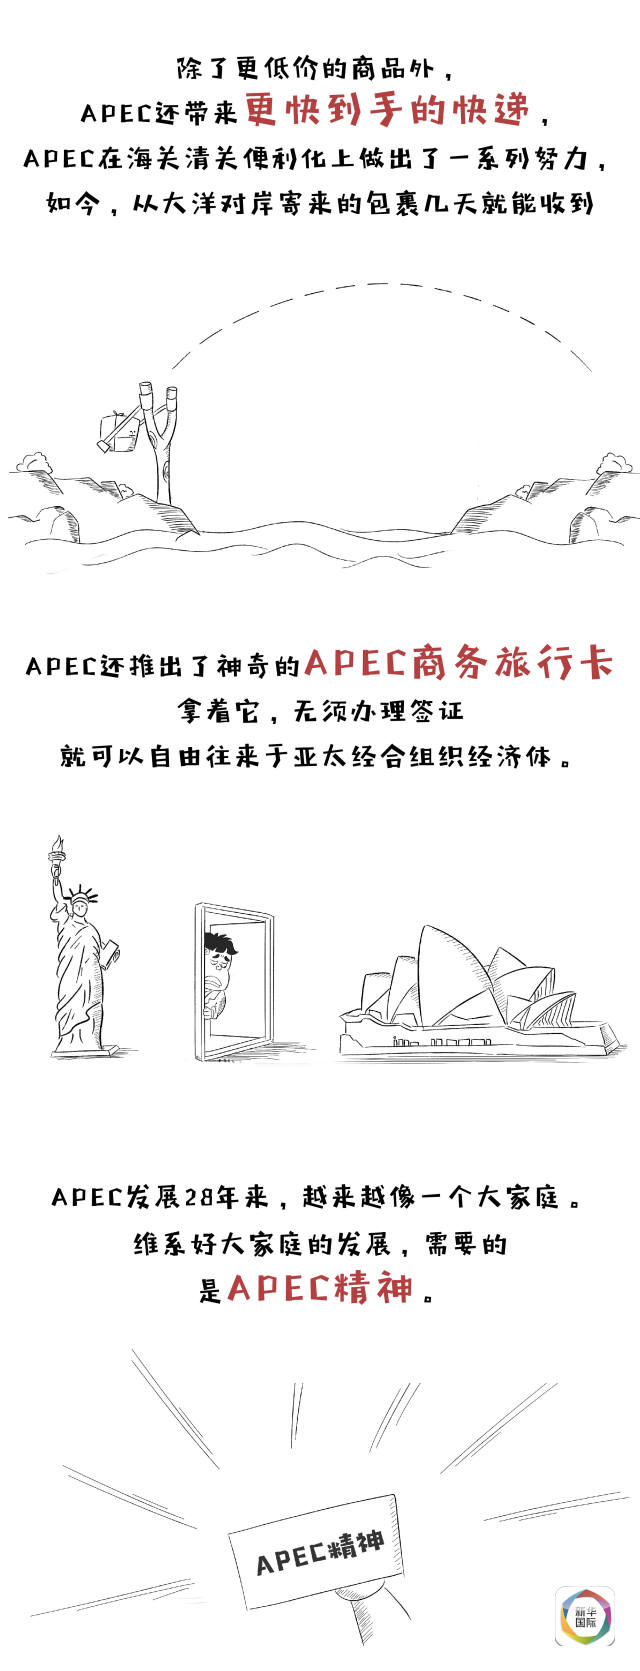 漫话 | 一图读懂APEC和你我生活啥关系